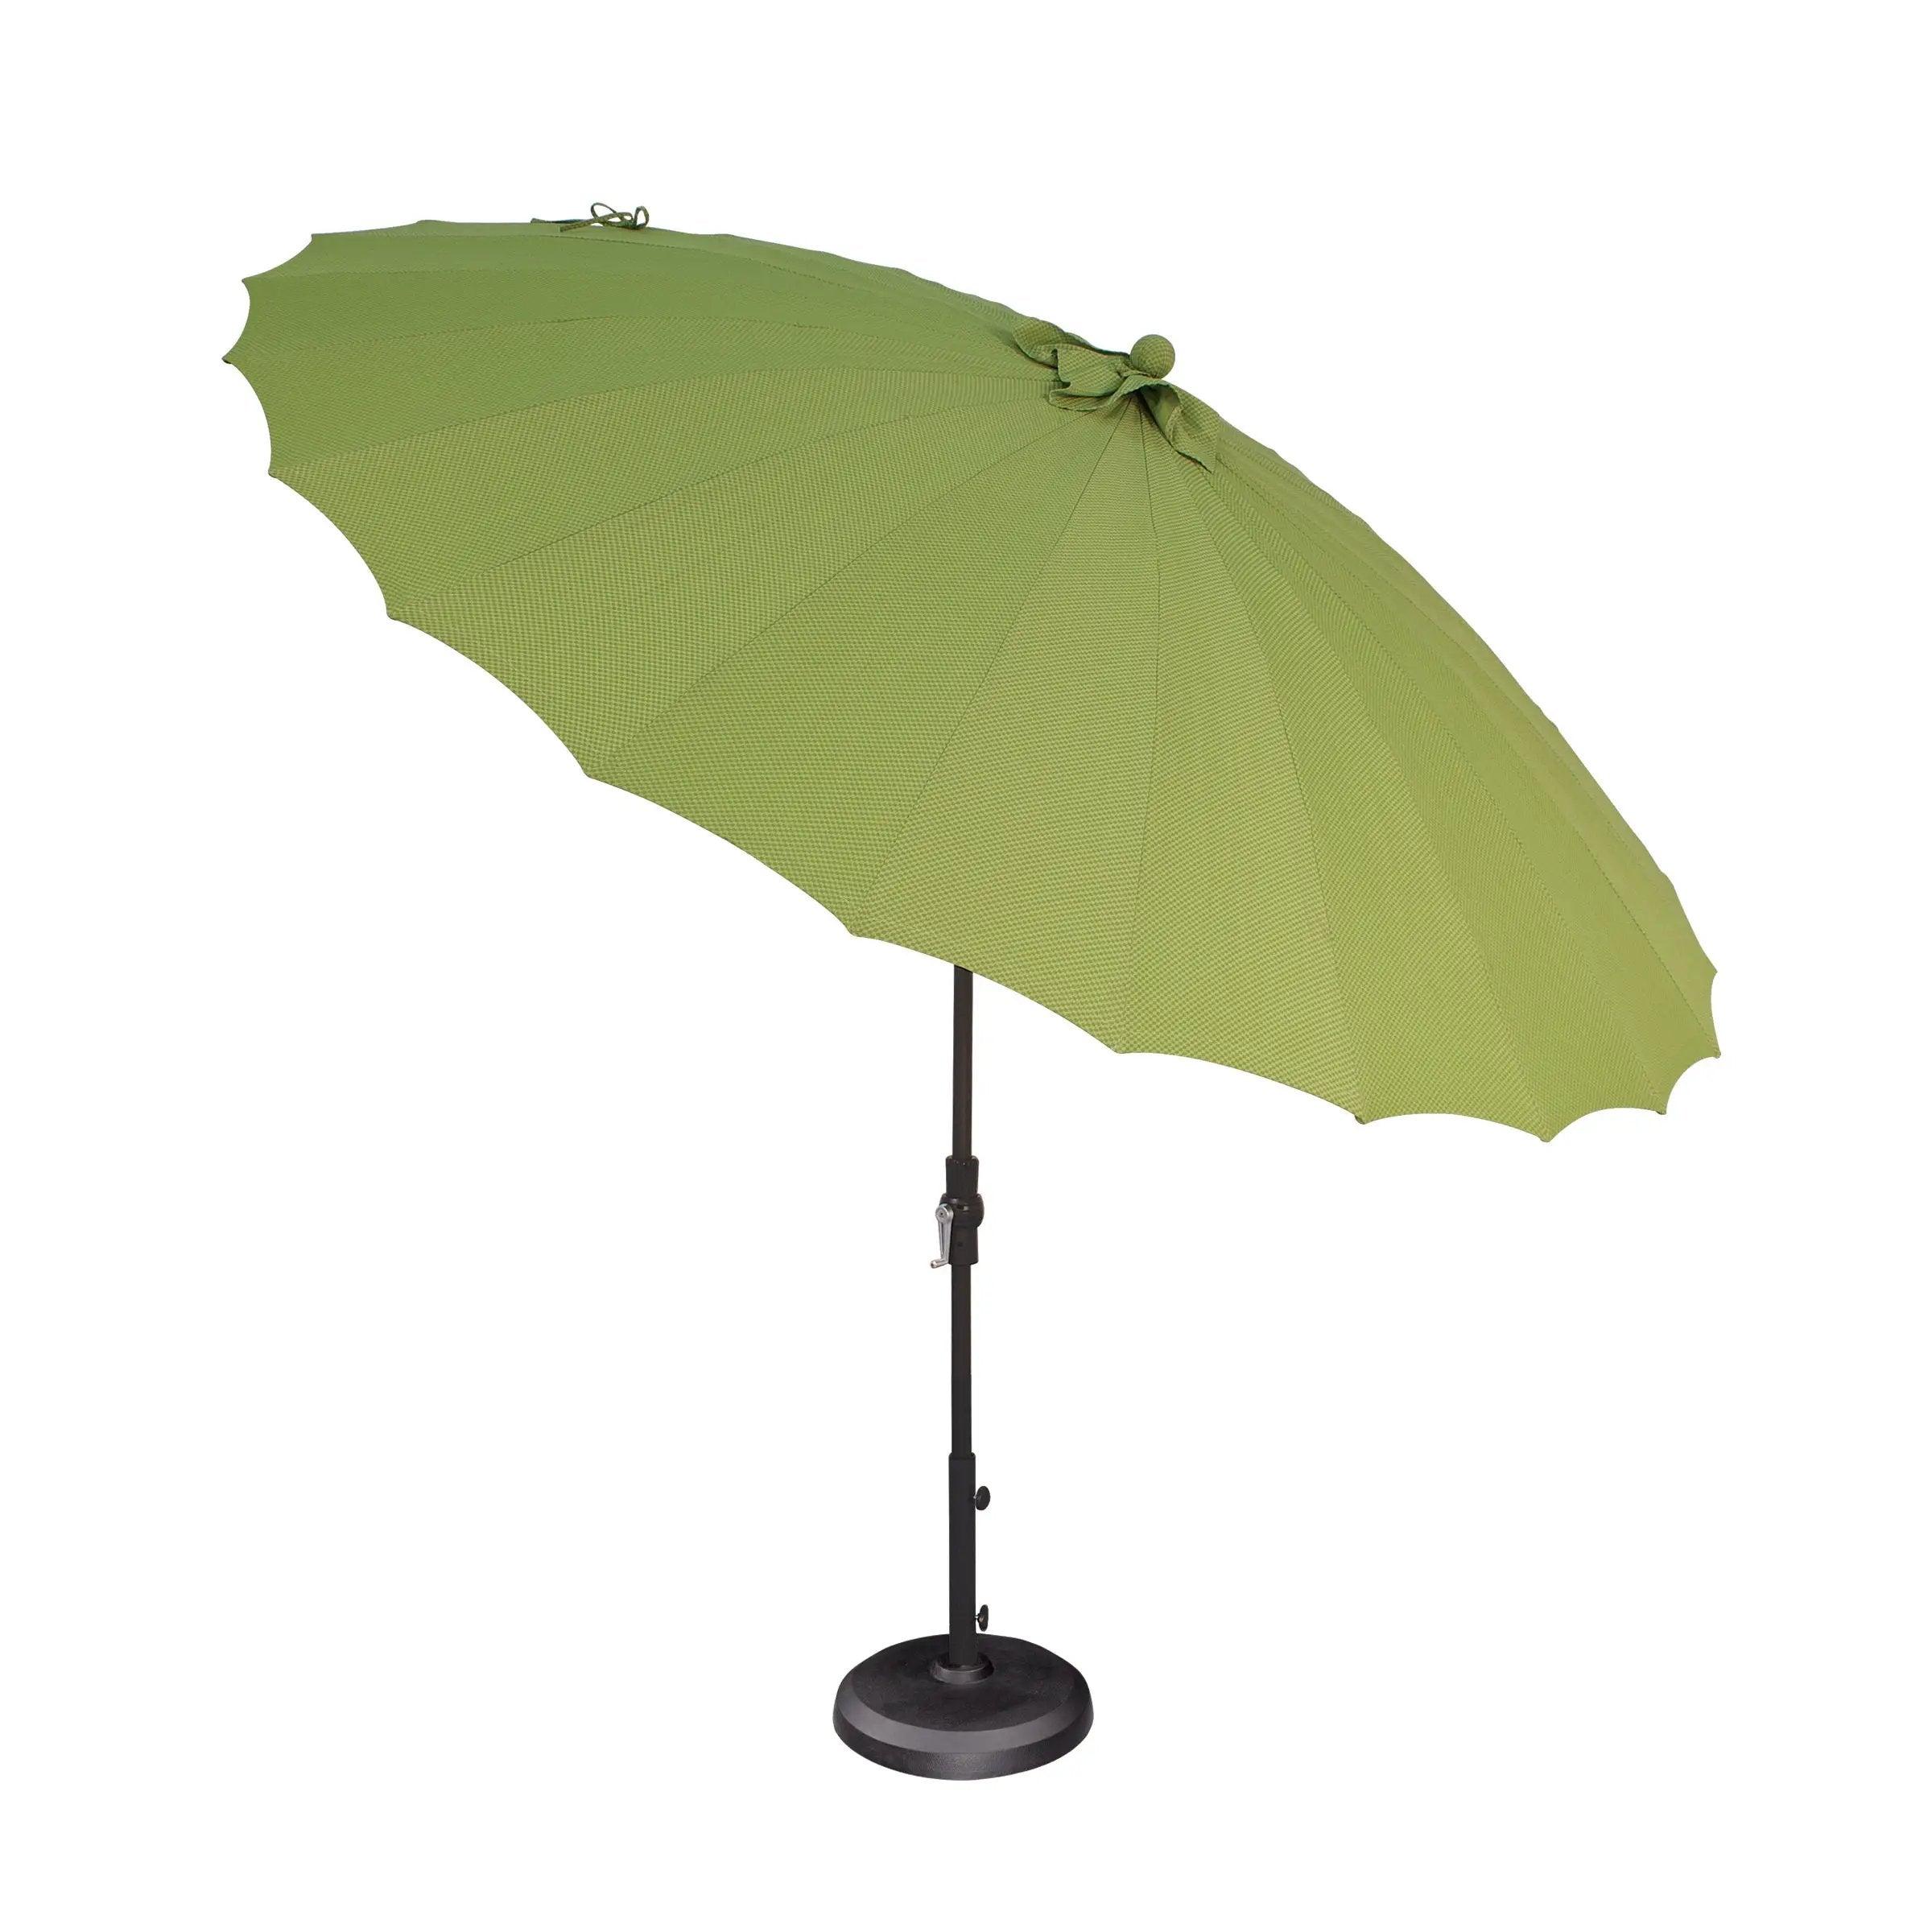 SHANGHAI Collar Tilt Umbrella